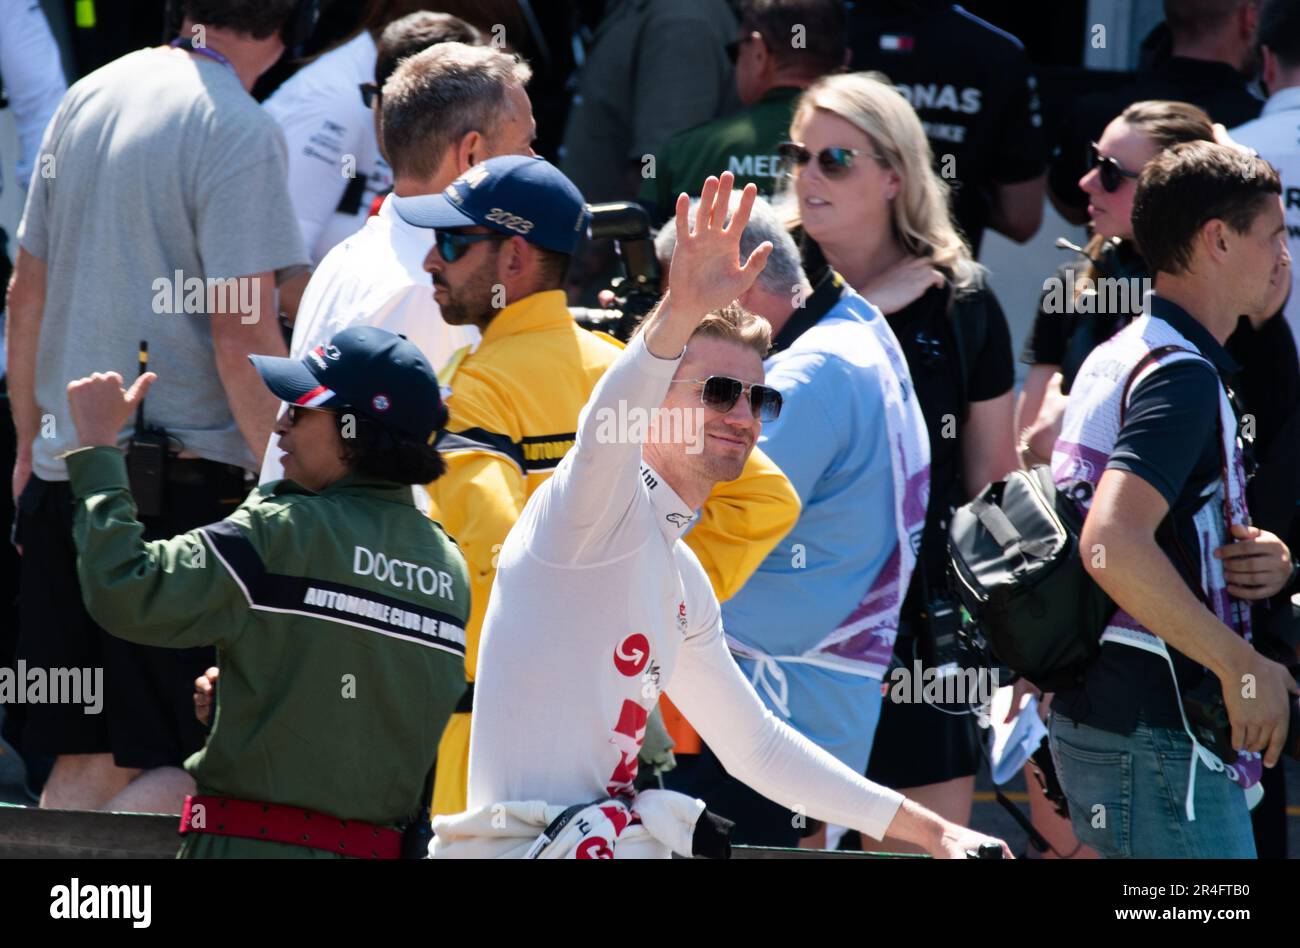 Fórmula 1 Gran Premio de Mónaco sábado - Nico Hulkenberg Foto de stock